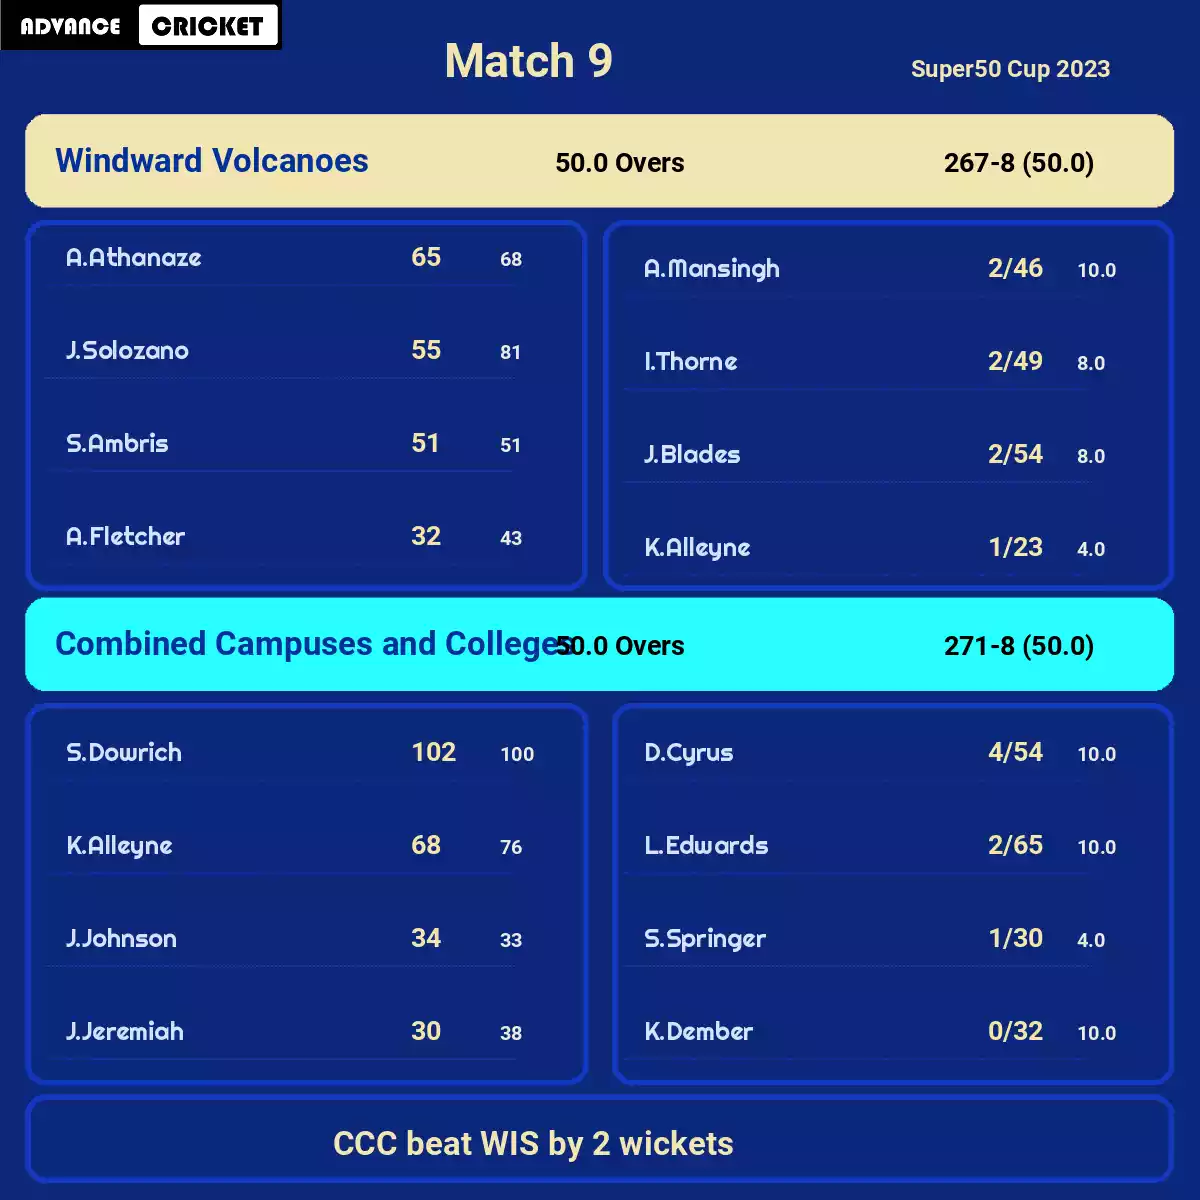 WIS vs CCC Match 9 Super50 Cup 2023